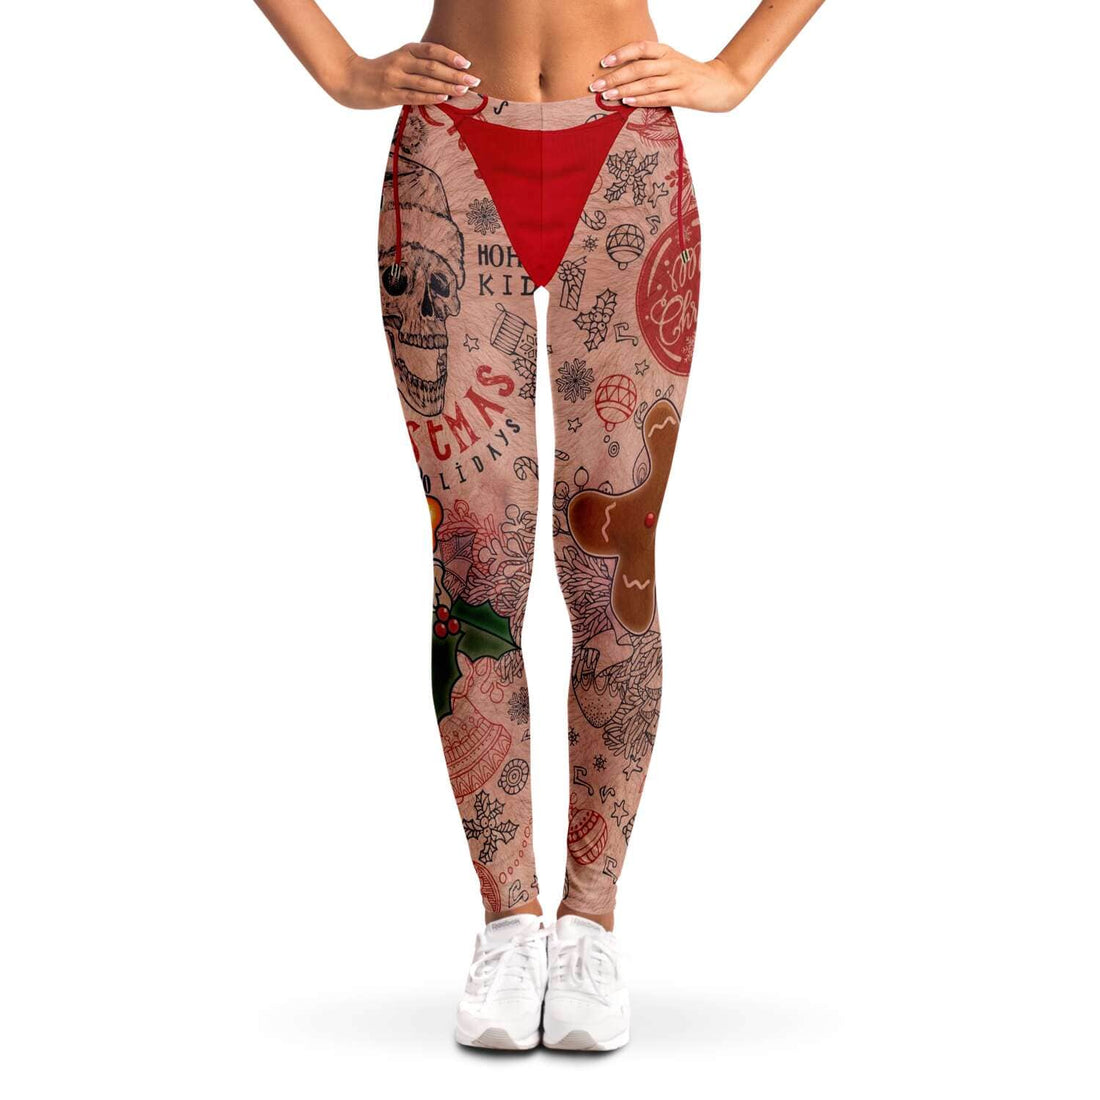 Kate McEnroe New York Naughty Santa Tattoo Leggings For WomenLeggingsSBLGS_D - QUB1P - XS